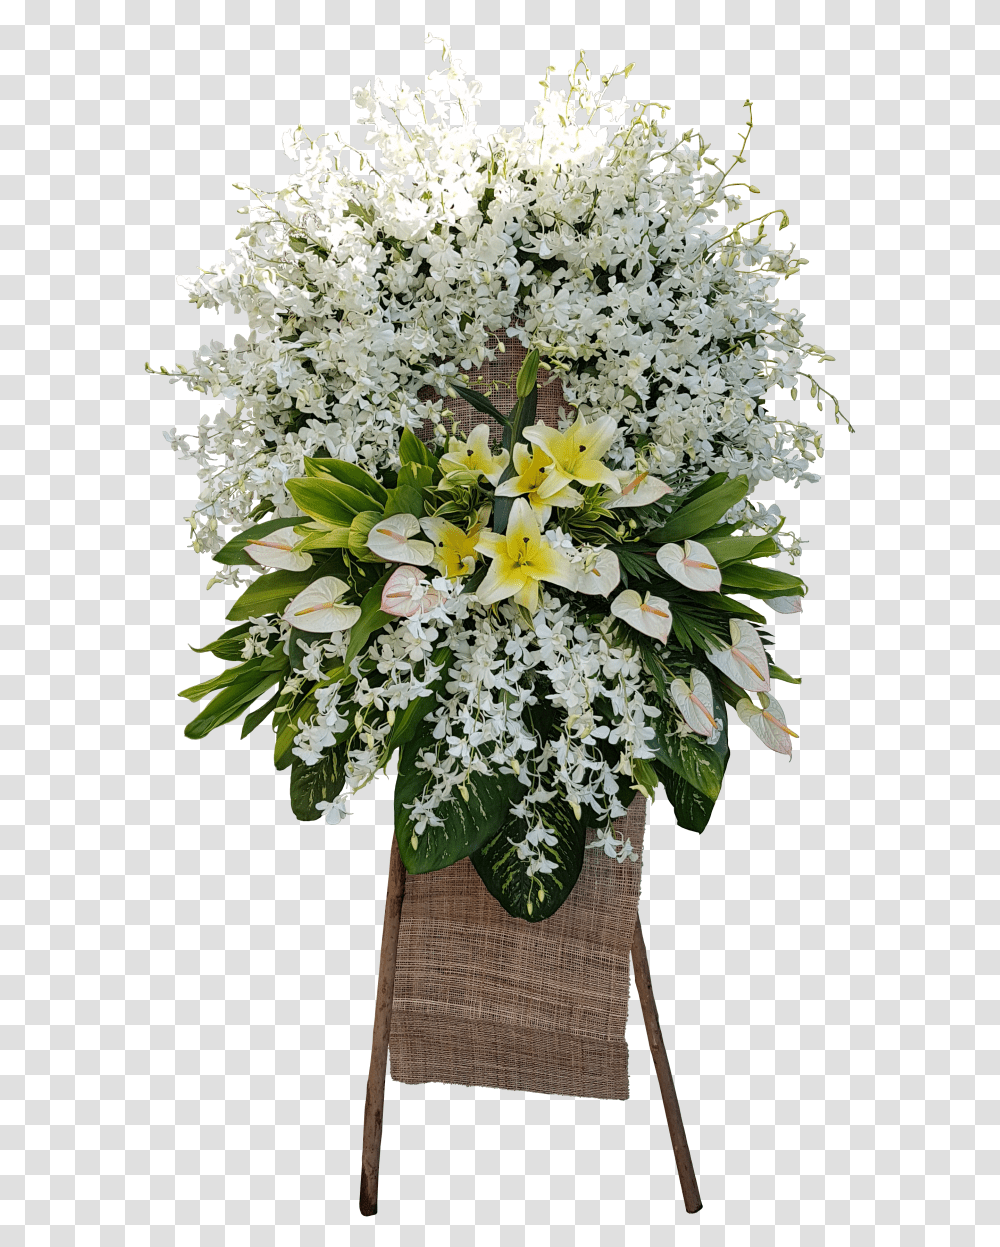 Send Funeral Flowers Express Your Condolences And Bouquet, Plant, Flower Bouquet, Flower Arrangement, Blossom Transparent Png